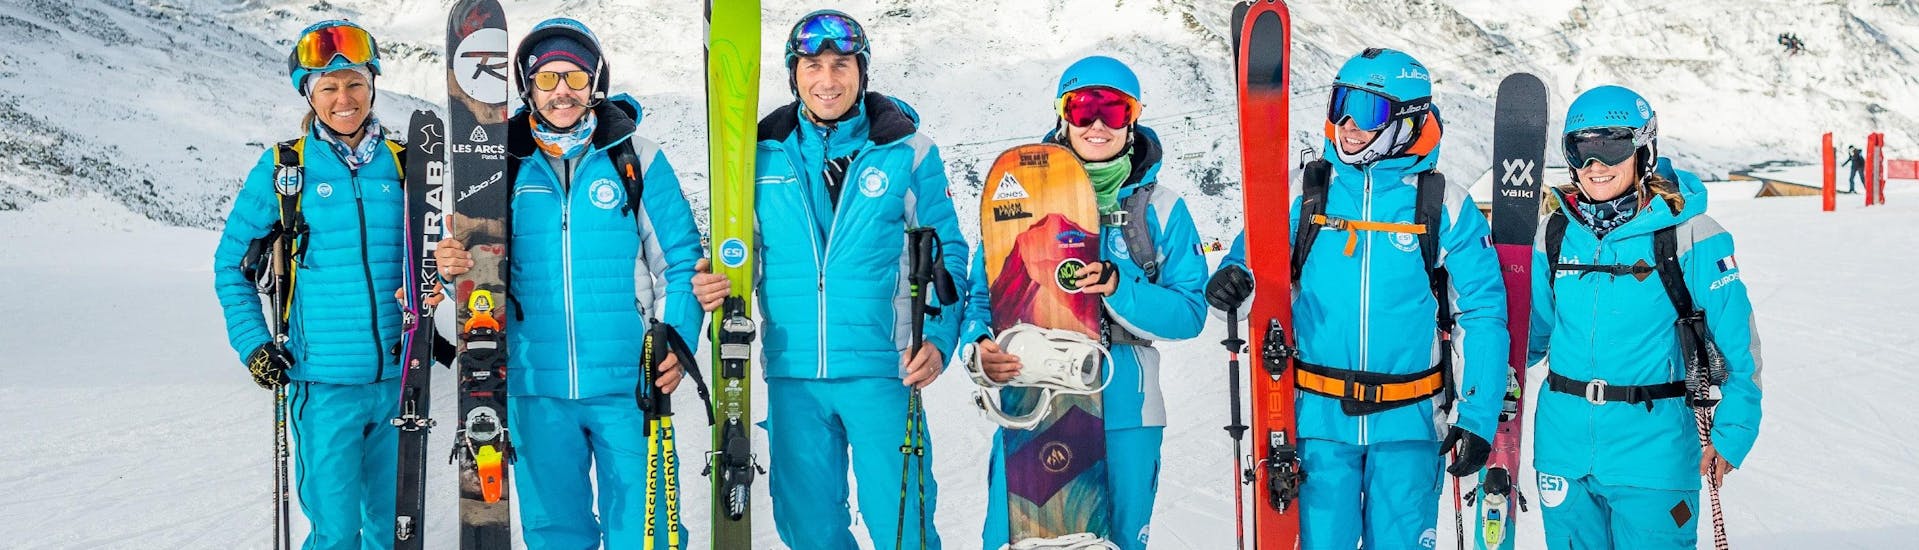 Los monitores de ESI Alpe d'Huez - European Ski School se preparan para recibir a los participantes de las clases particulares de snowboard para todos los niveles.